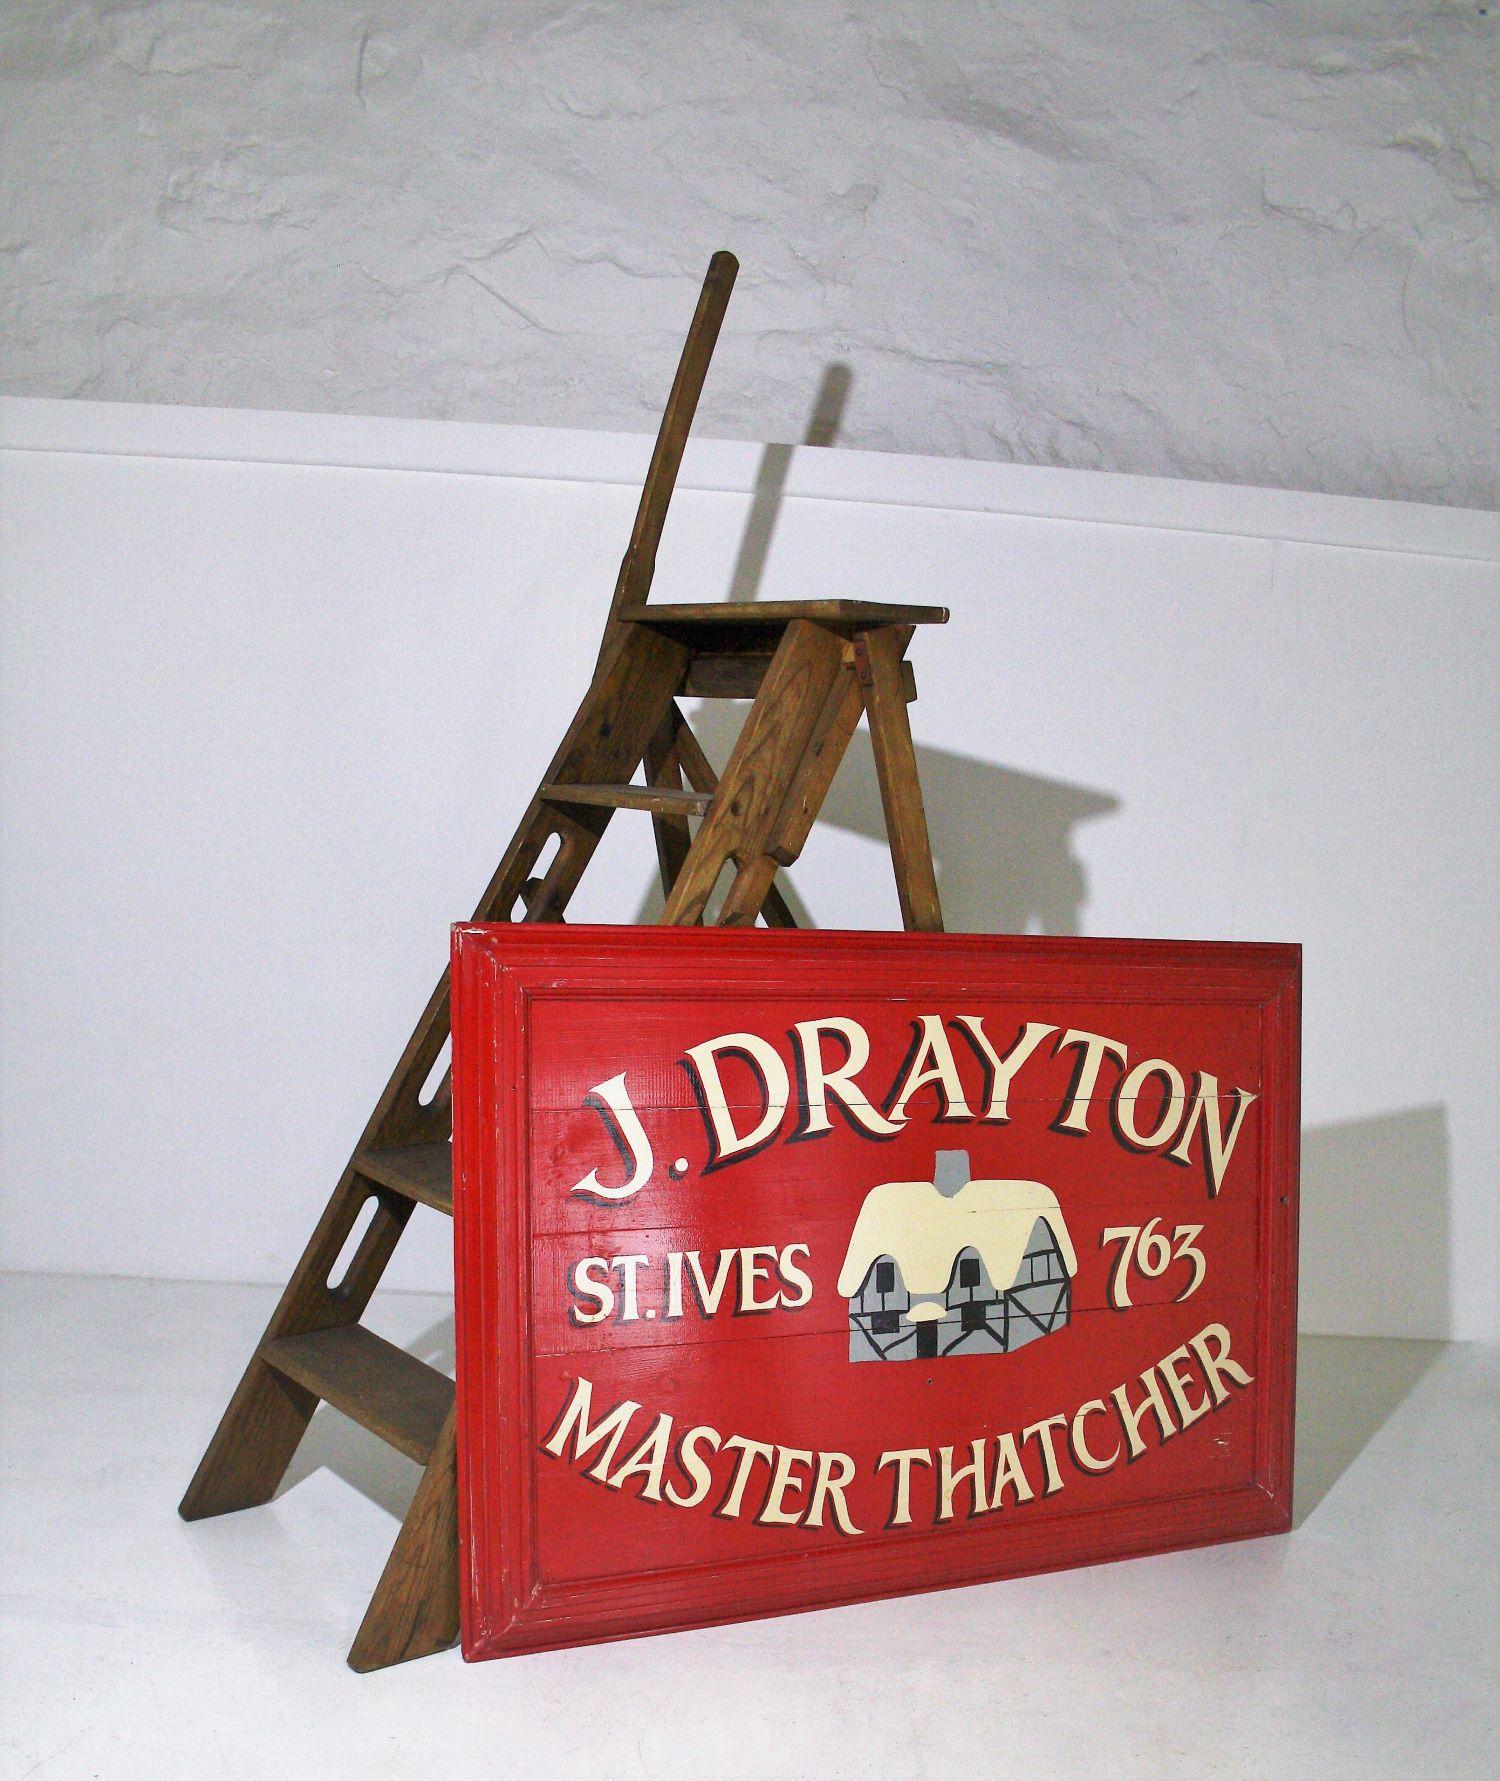 Ein schönes altes handgemaltes Schild J.Drayton Master Thatcher of St. Ives.
Bekannt für seine Surfstrände und malerischen Küstendörfer mit strohgedeckten Häusern, erinnert dieses Stück an das einfache Leben vor dem Zeitalter der Mobiltelefone und